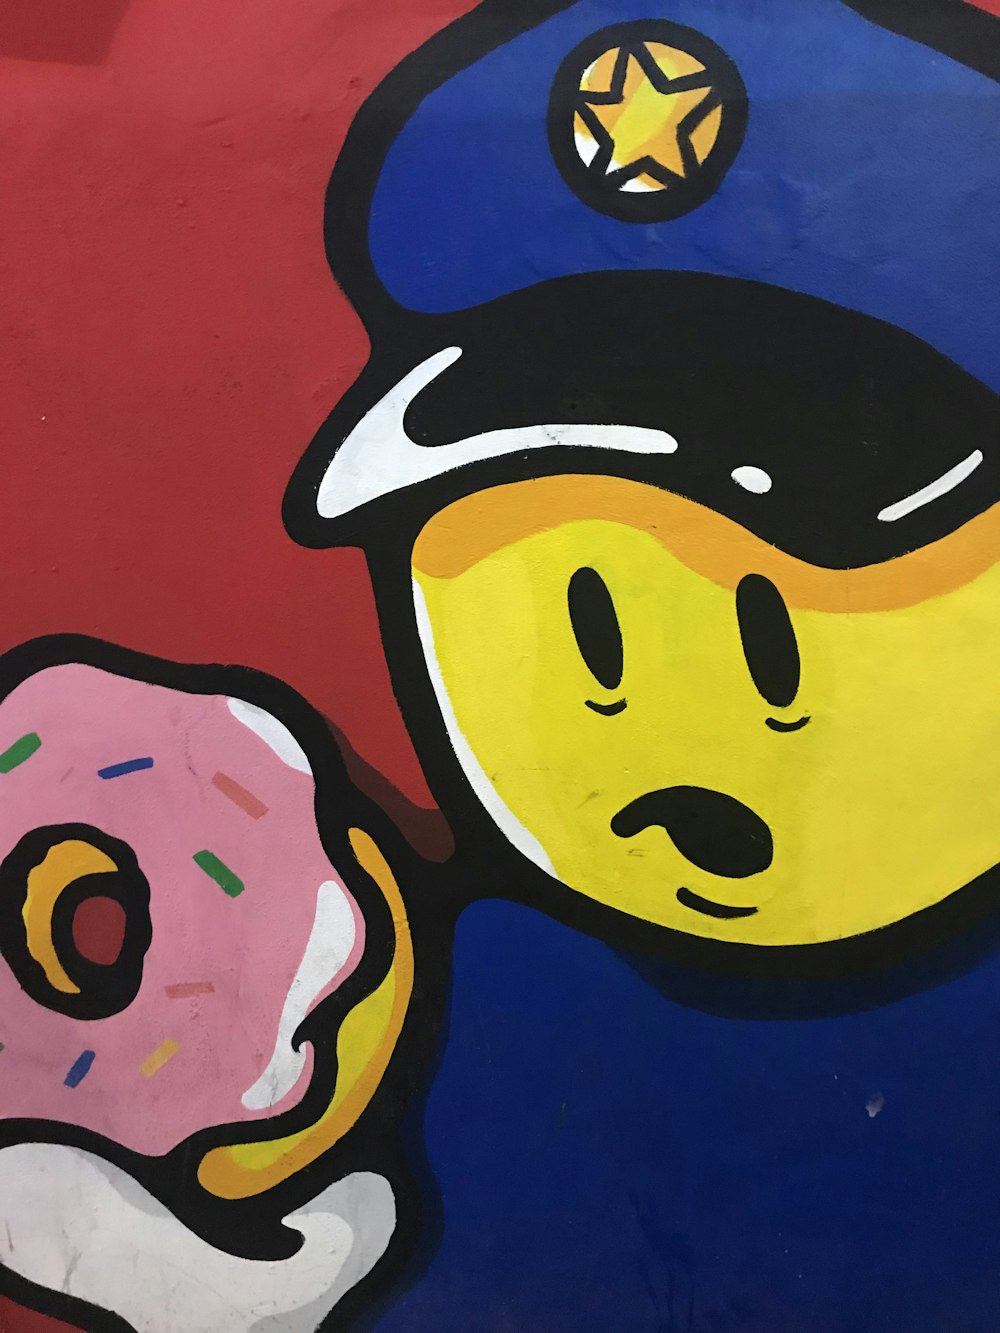 yellow emoji wearing blue police cap holding pink doughnut illustration